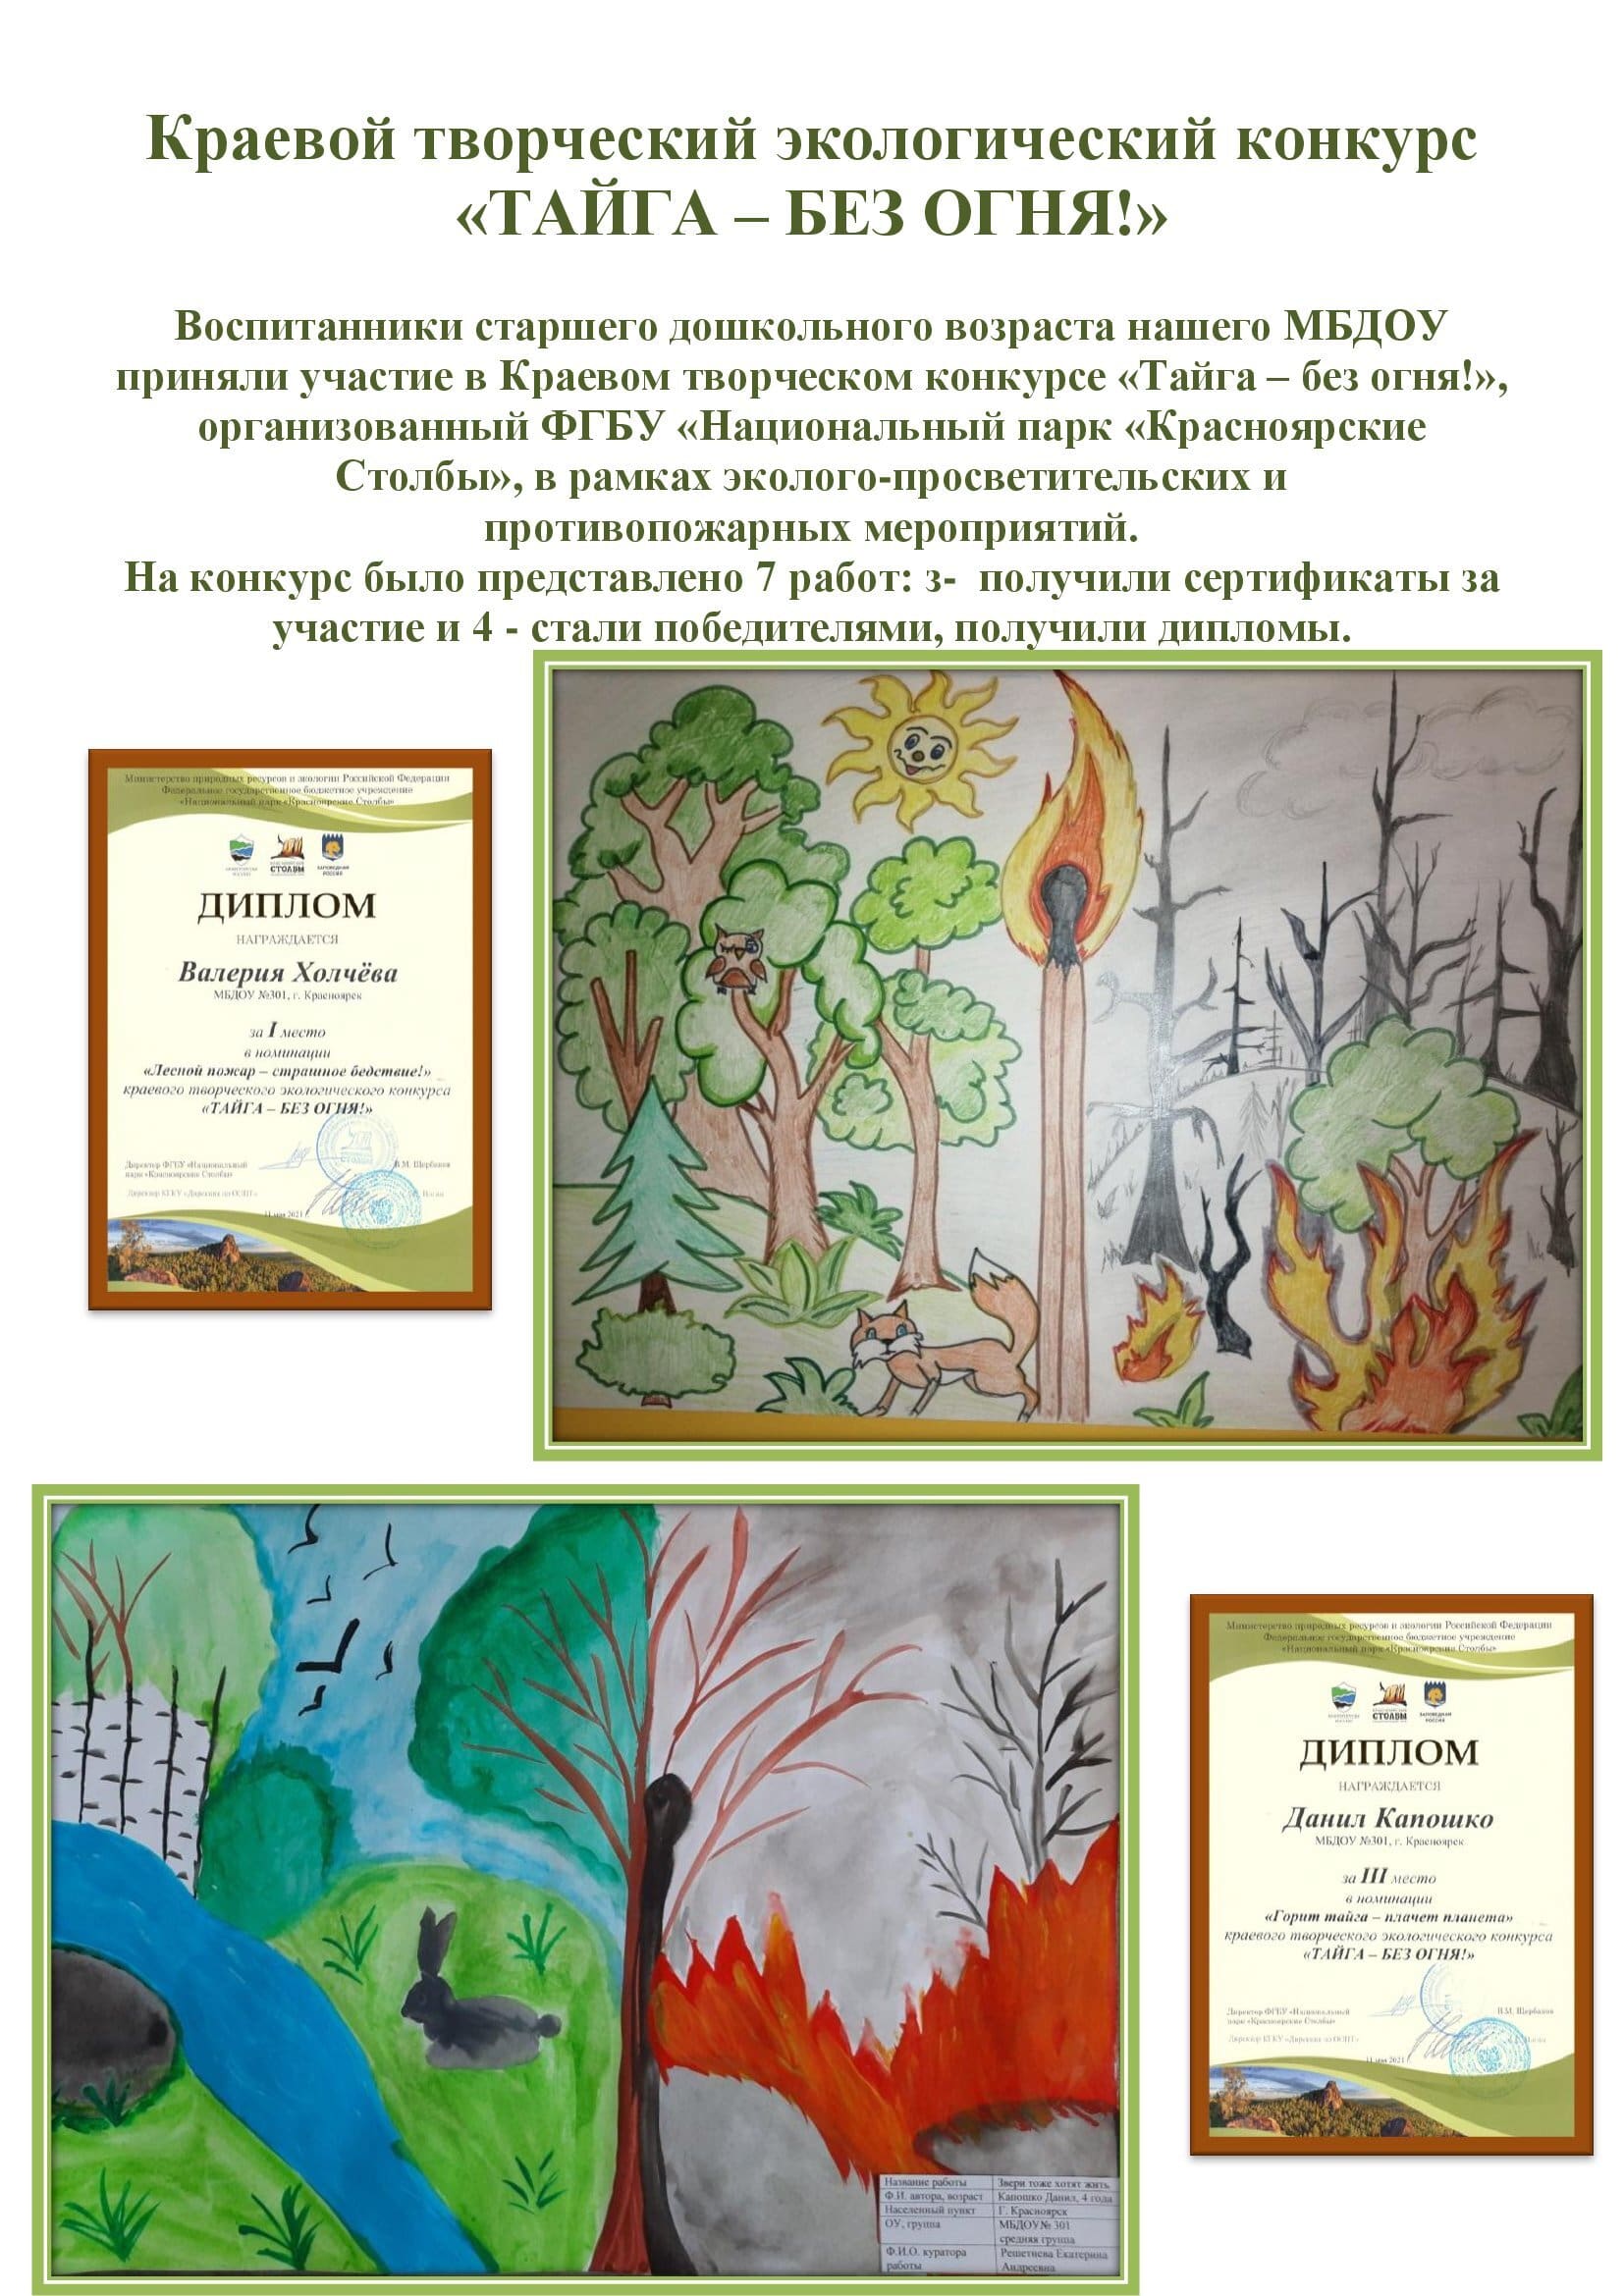 Краевой творческий экологический конкурс Тайга без огня